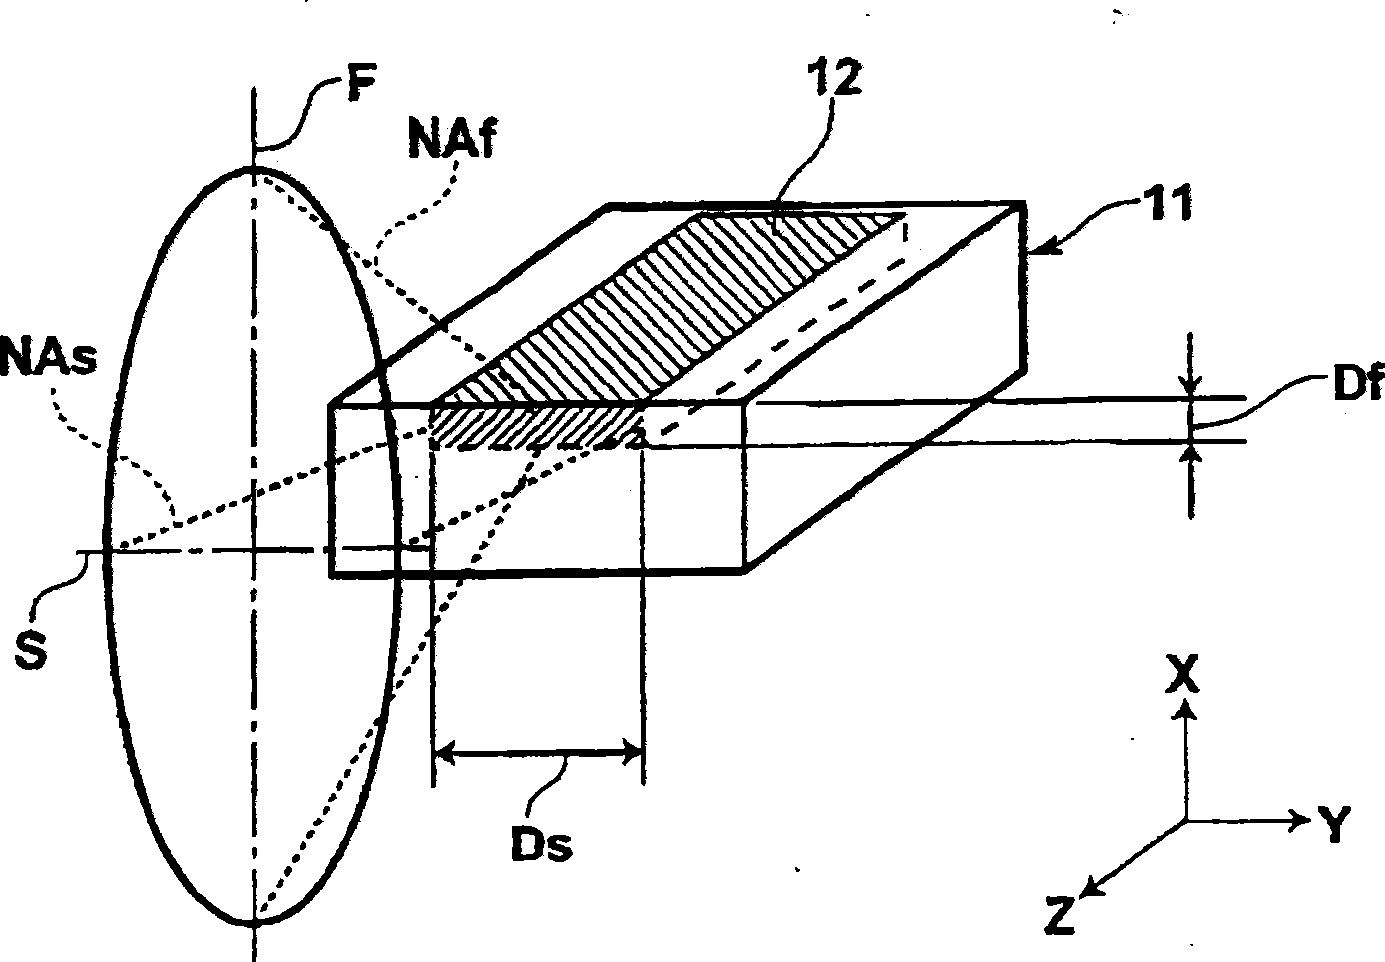 Laser wave combination apparatus